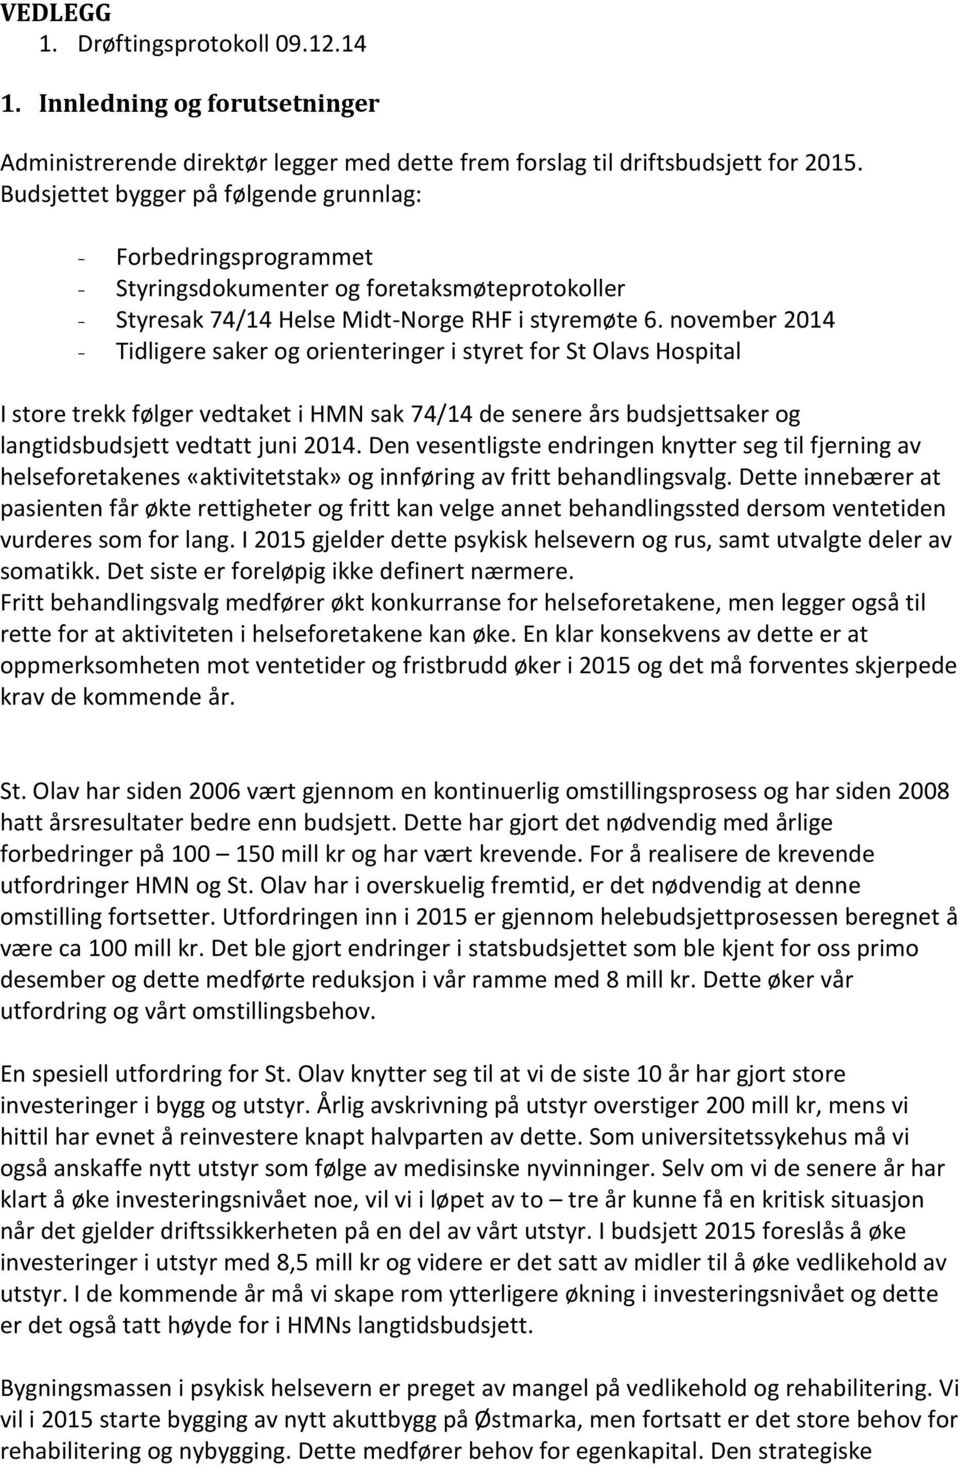 november 2014 - Tidligere saker og orienteringer i styret for St Olavs Hospital I store trekk følger vedtaket i HMN sak 74/14 de senere års budsjettsaker og langtidsbudsjett vedtatt juni 2014.